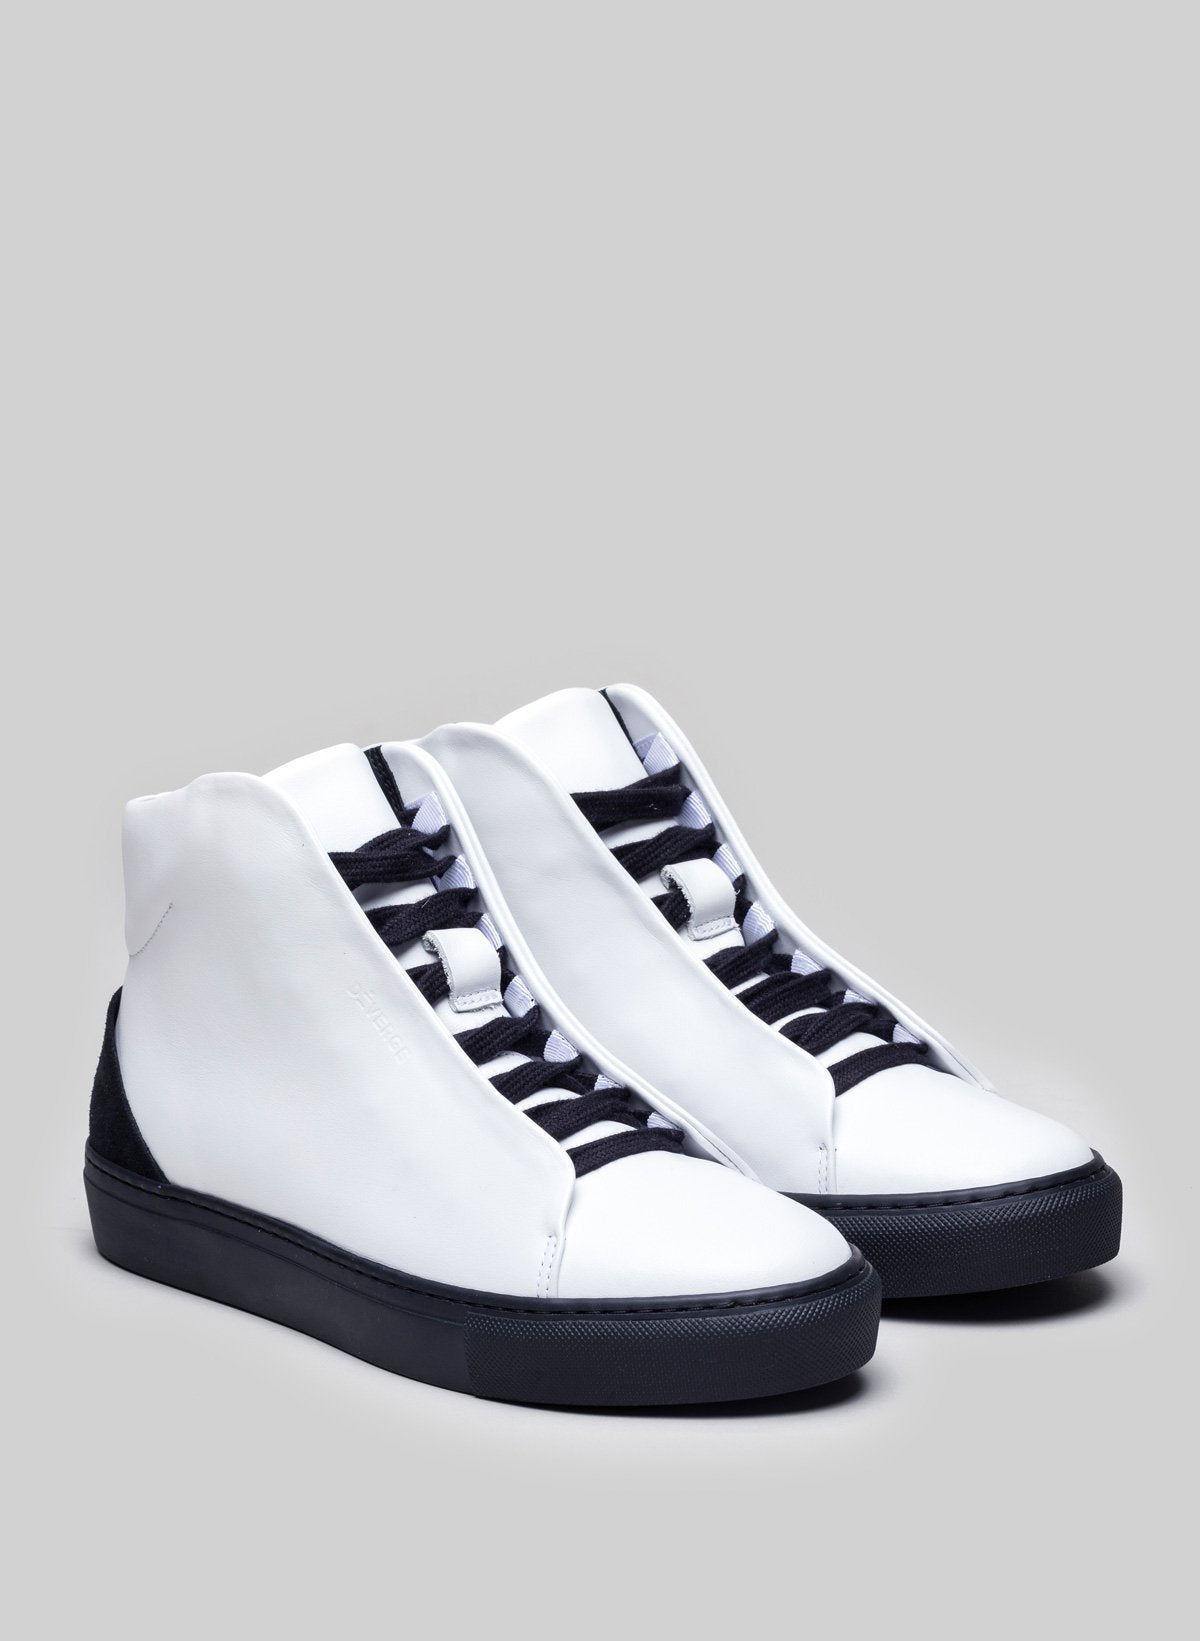 Chaussures blanches sneakers avec semelles et lacets noirs, chaussures personnalisées par Diverge.